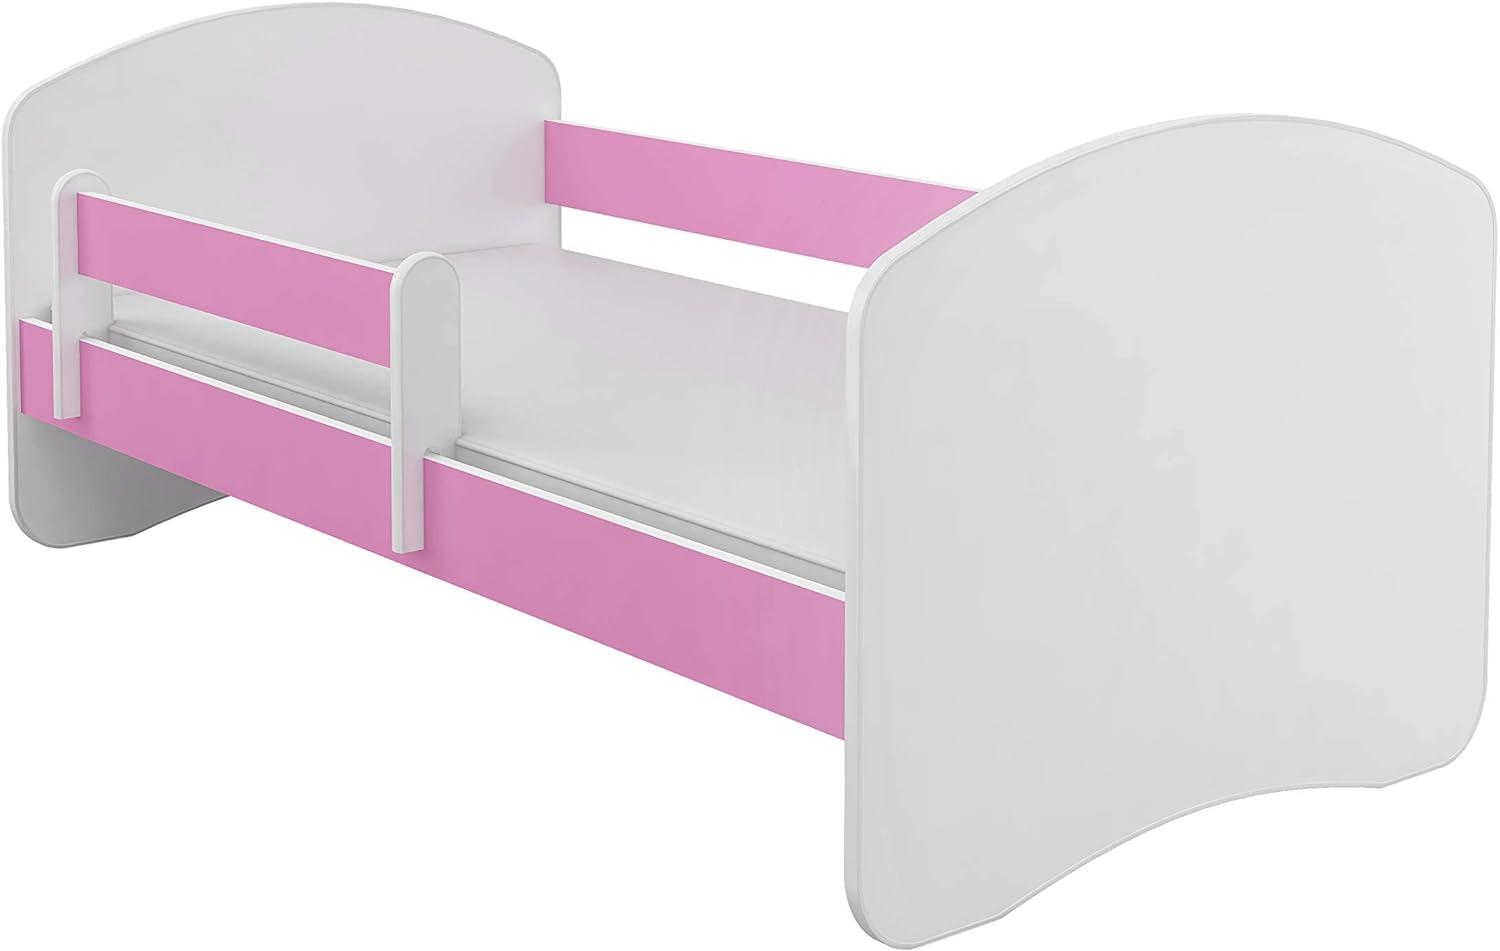 Kinderbett Jugendbett mit einer Schublade und Matratze Weiß ACMA II (180x80 cm, Rosa) Bild 1